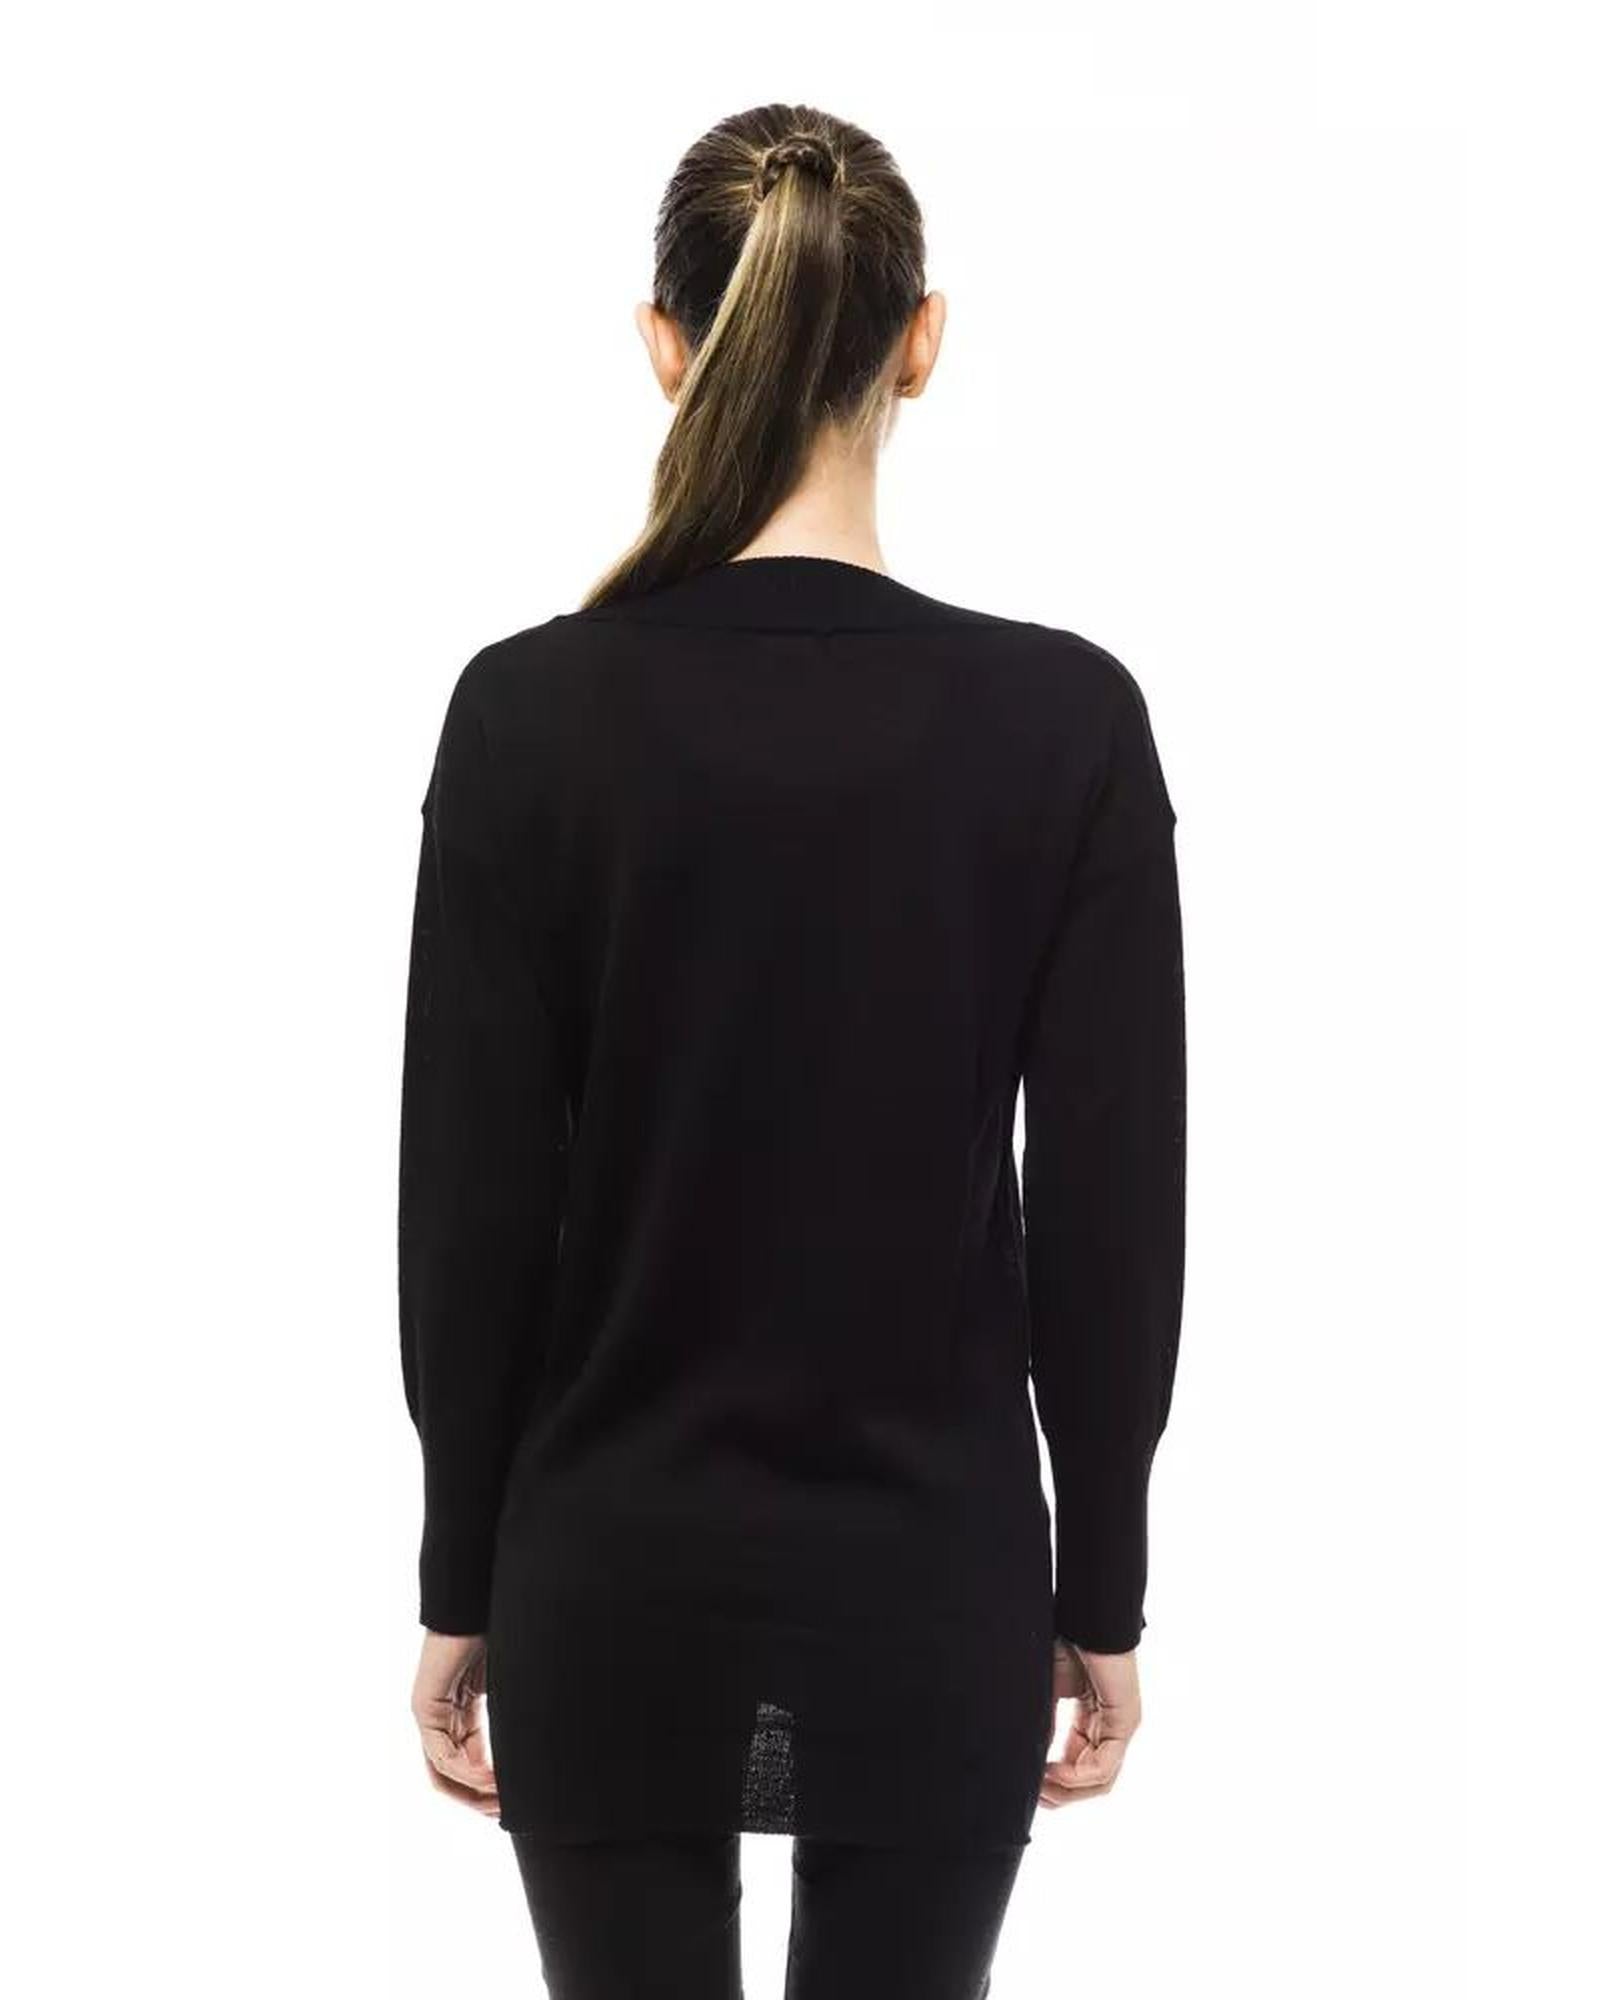 Women's Black Wool Sweater - 44 IT